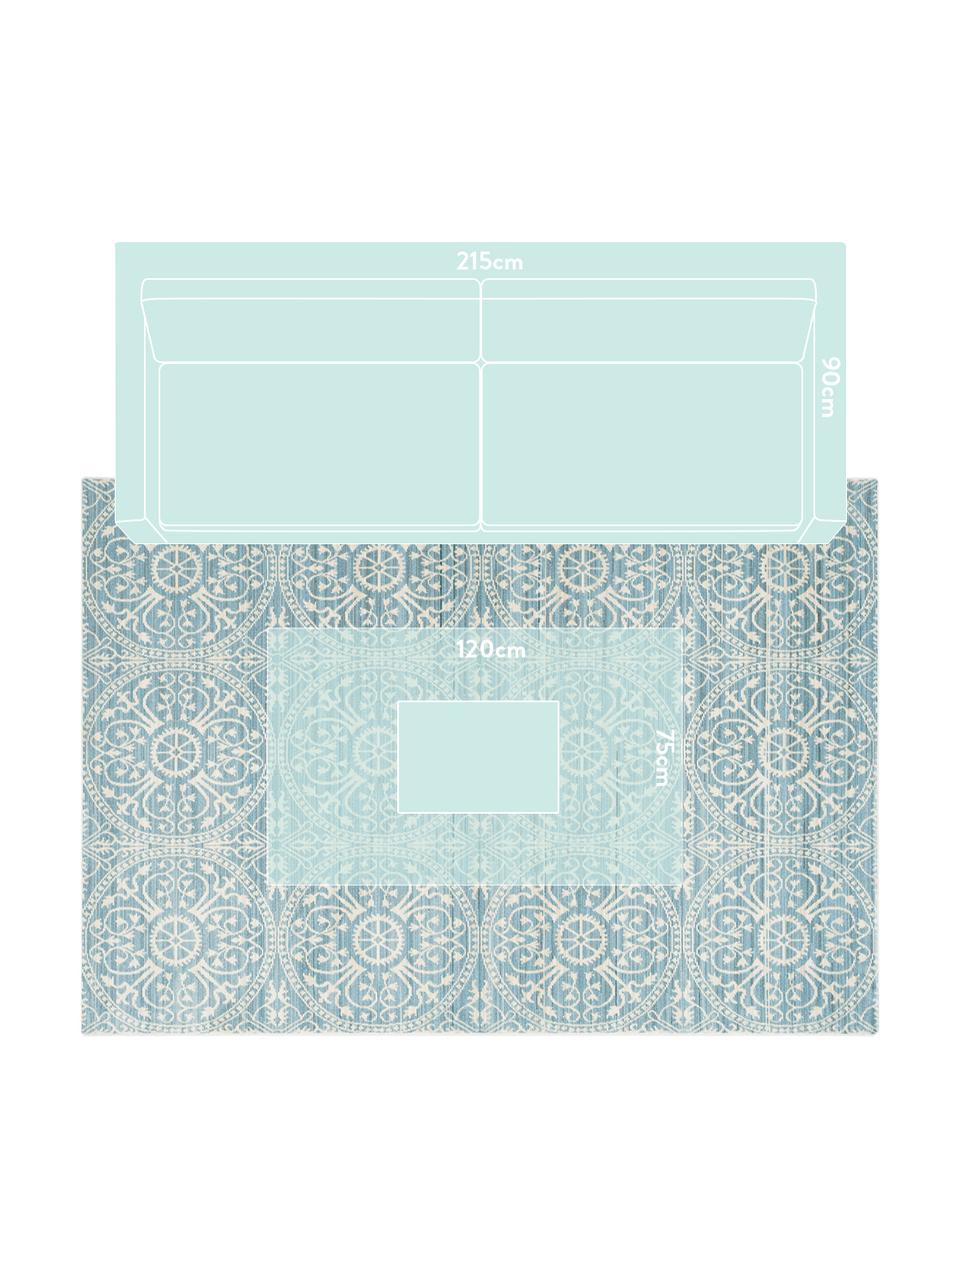 Teppich Taryn in Türkis-Weiß, Flor: 100% Polyester, Türkis, Creme, B 150 x L 245 cm (Größe M)